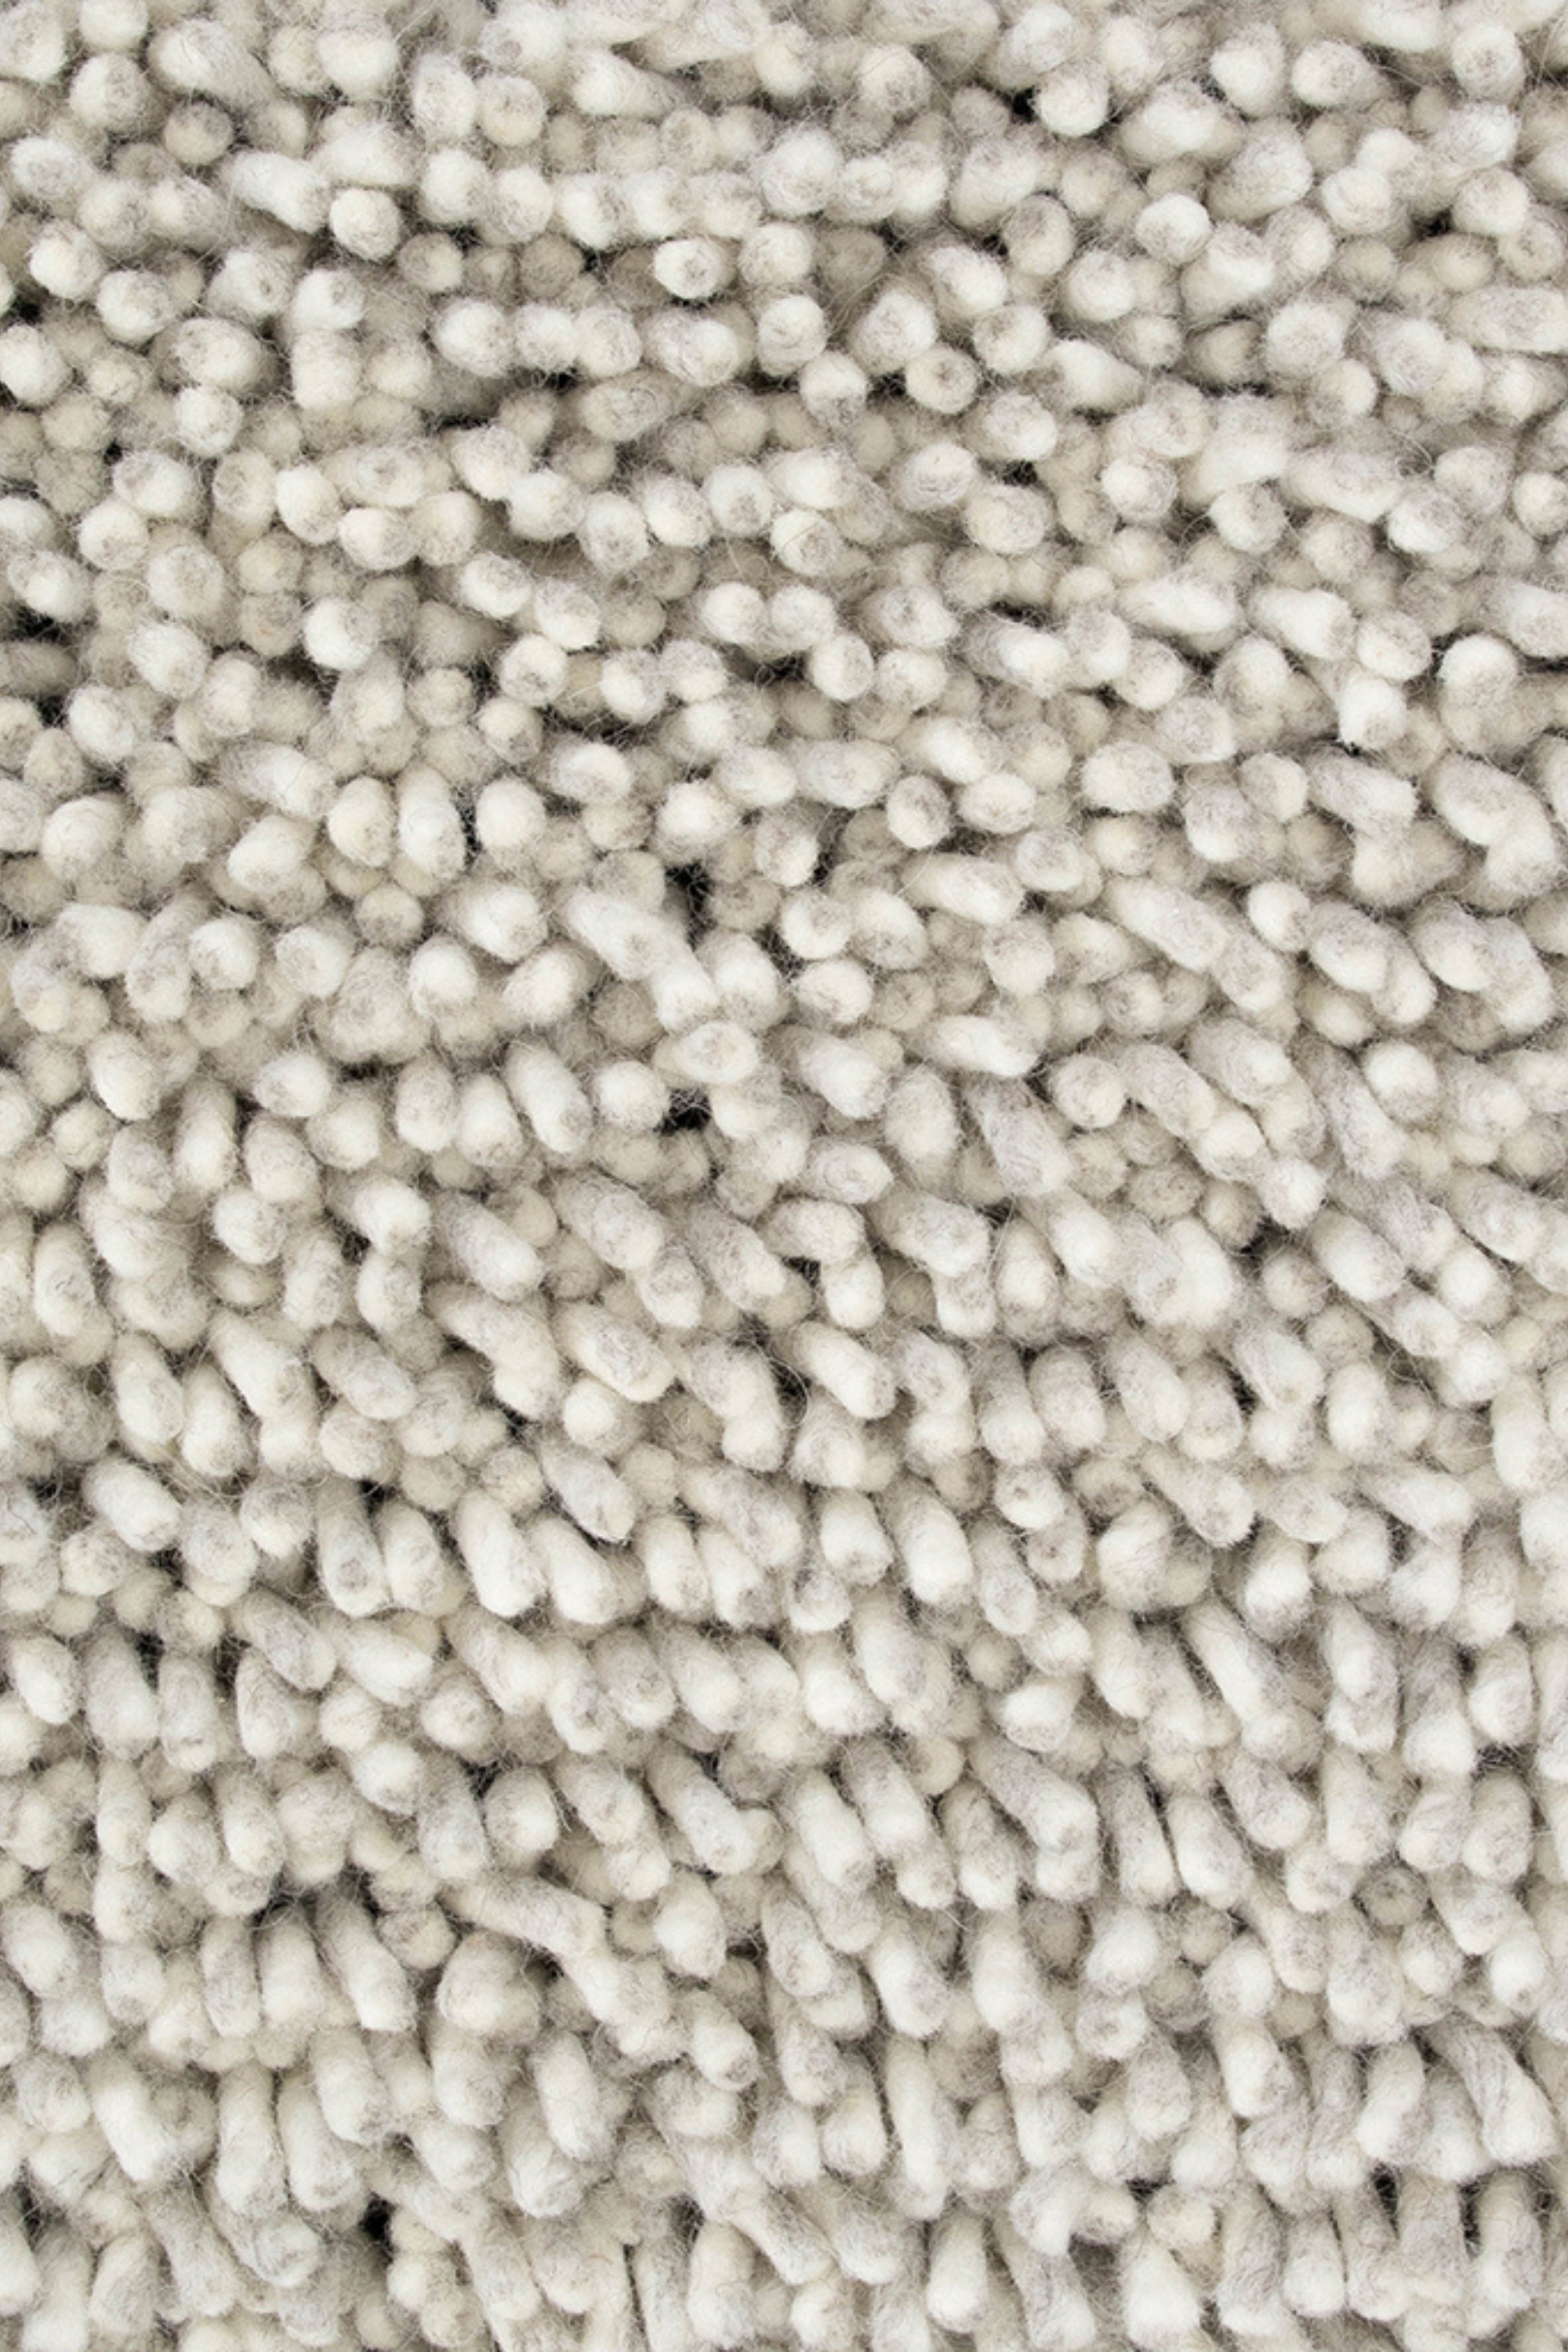 Plain grey rug with shaggy pile